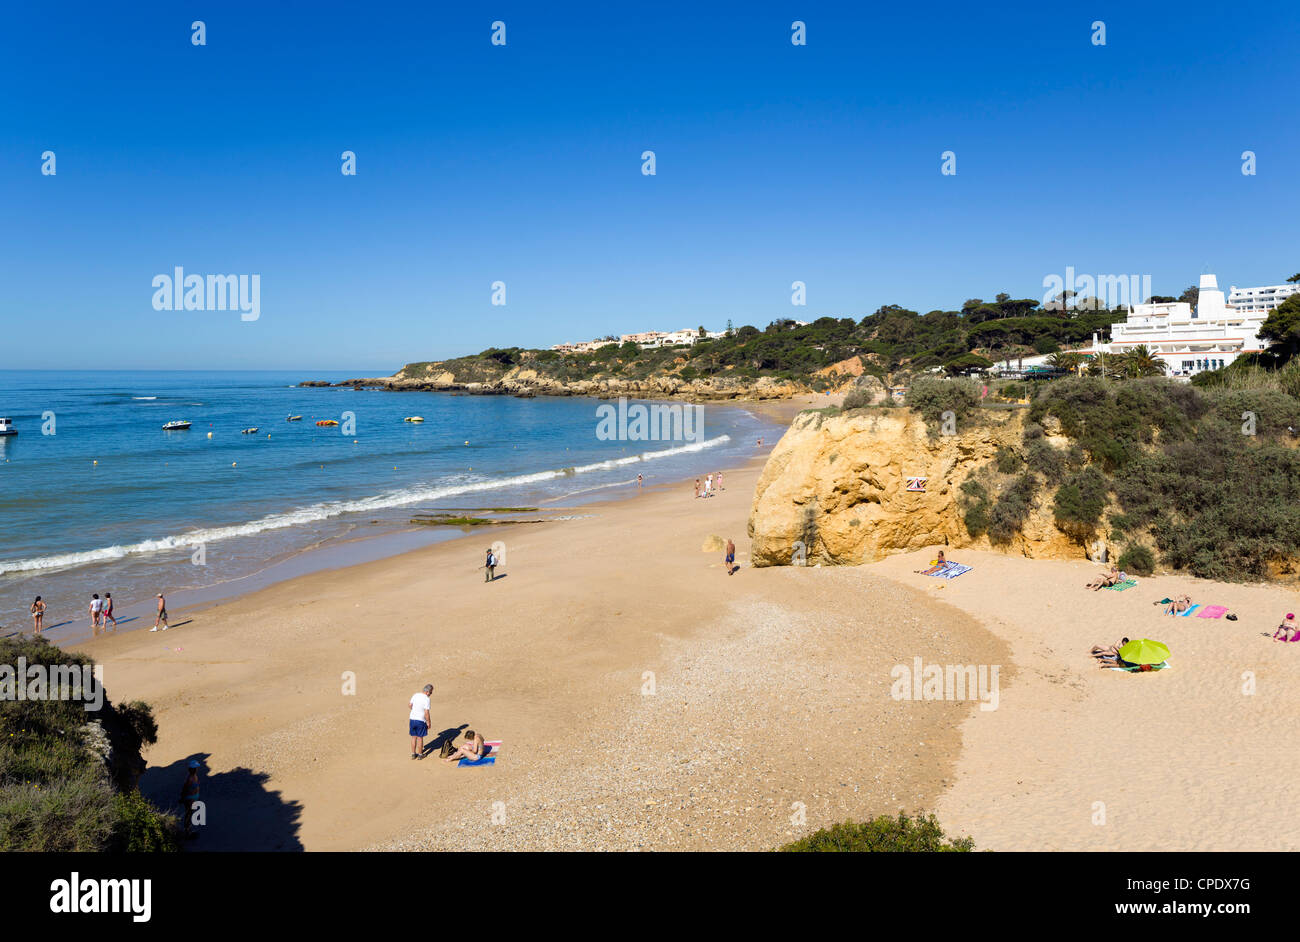 Praia da Oura, Albufeira, Algarve, Portugal Banque D'Images